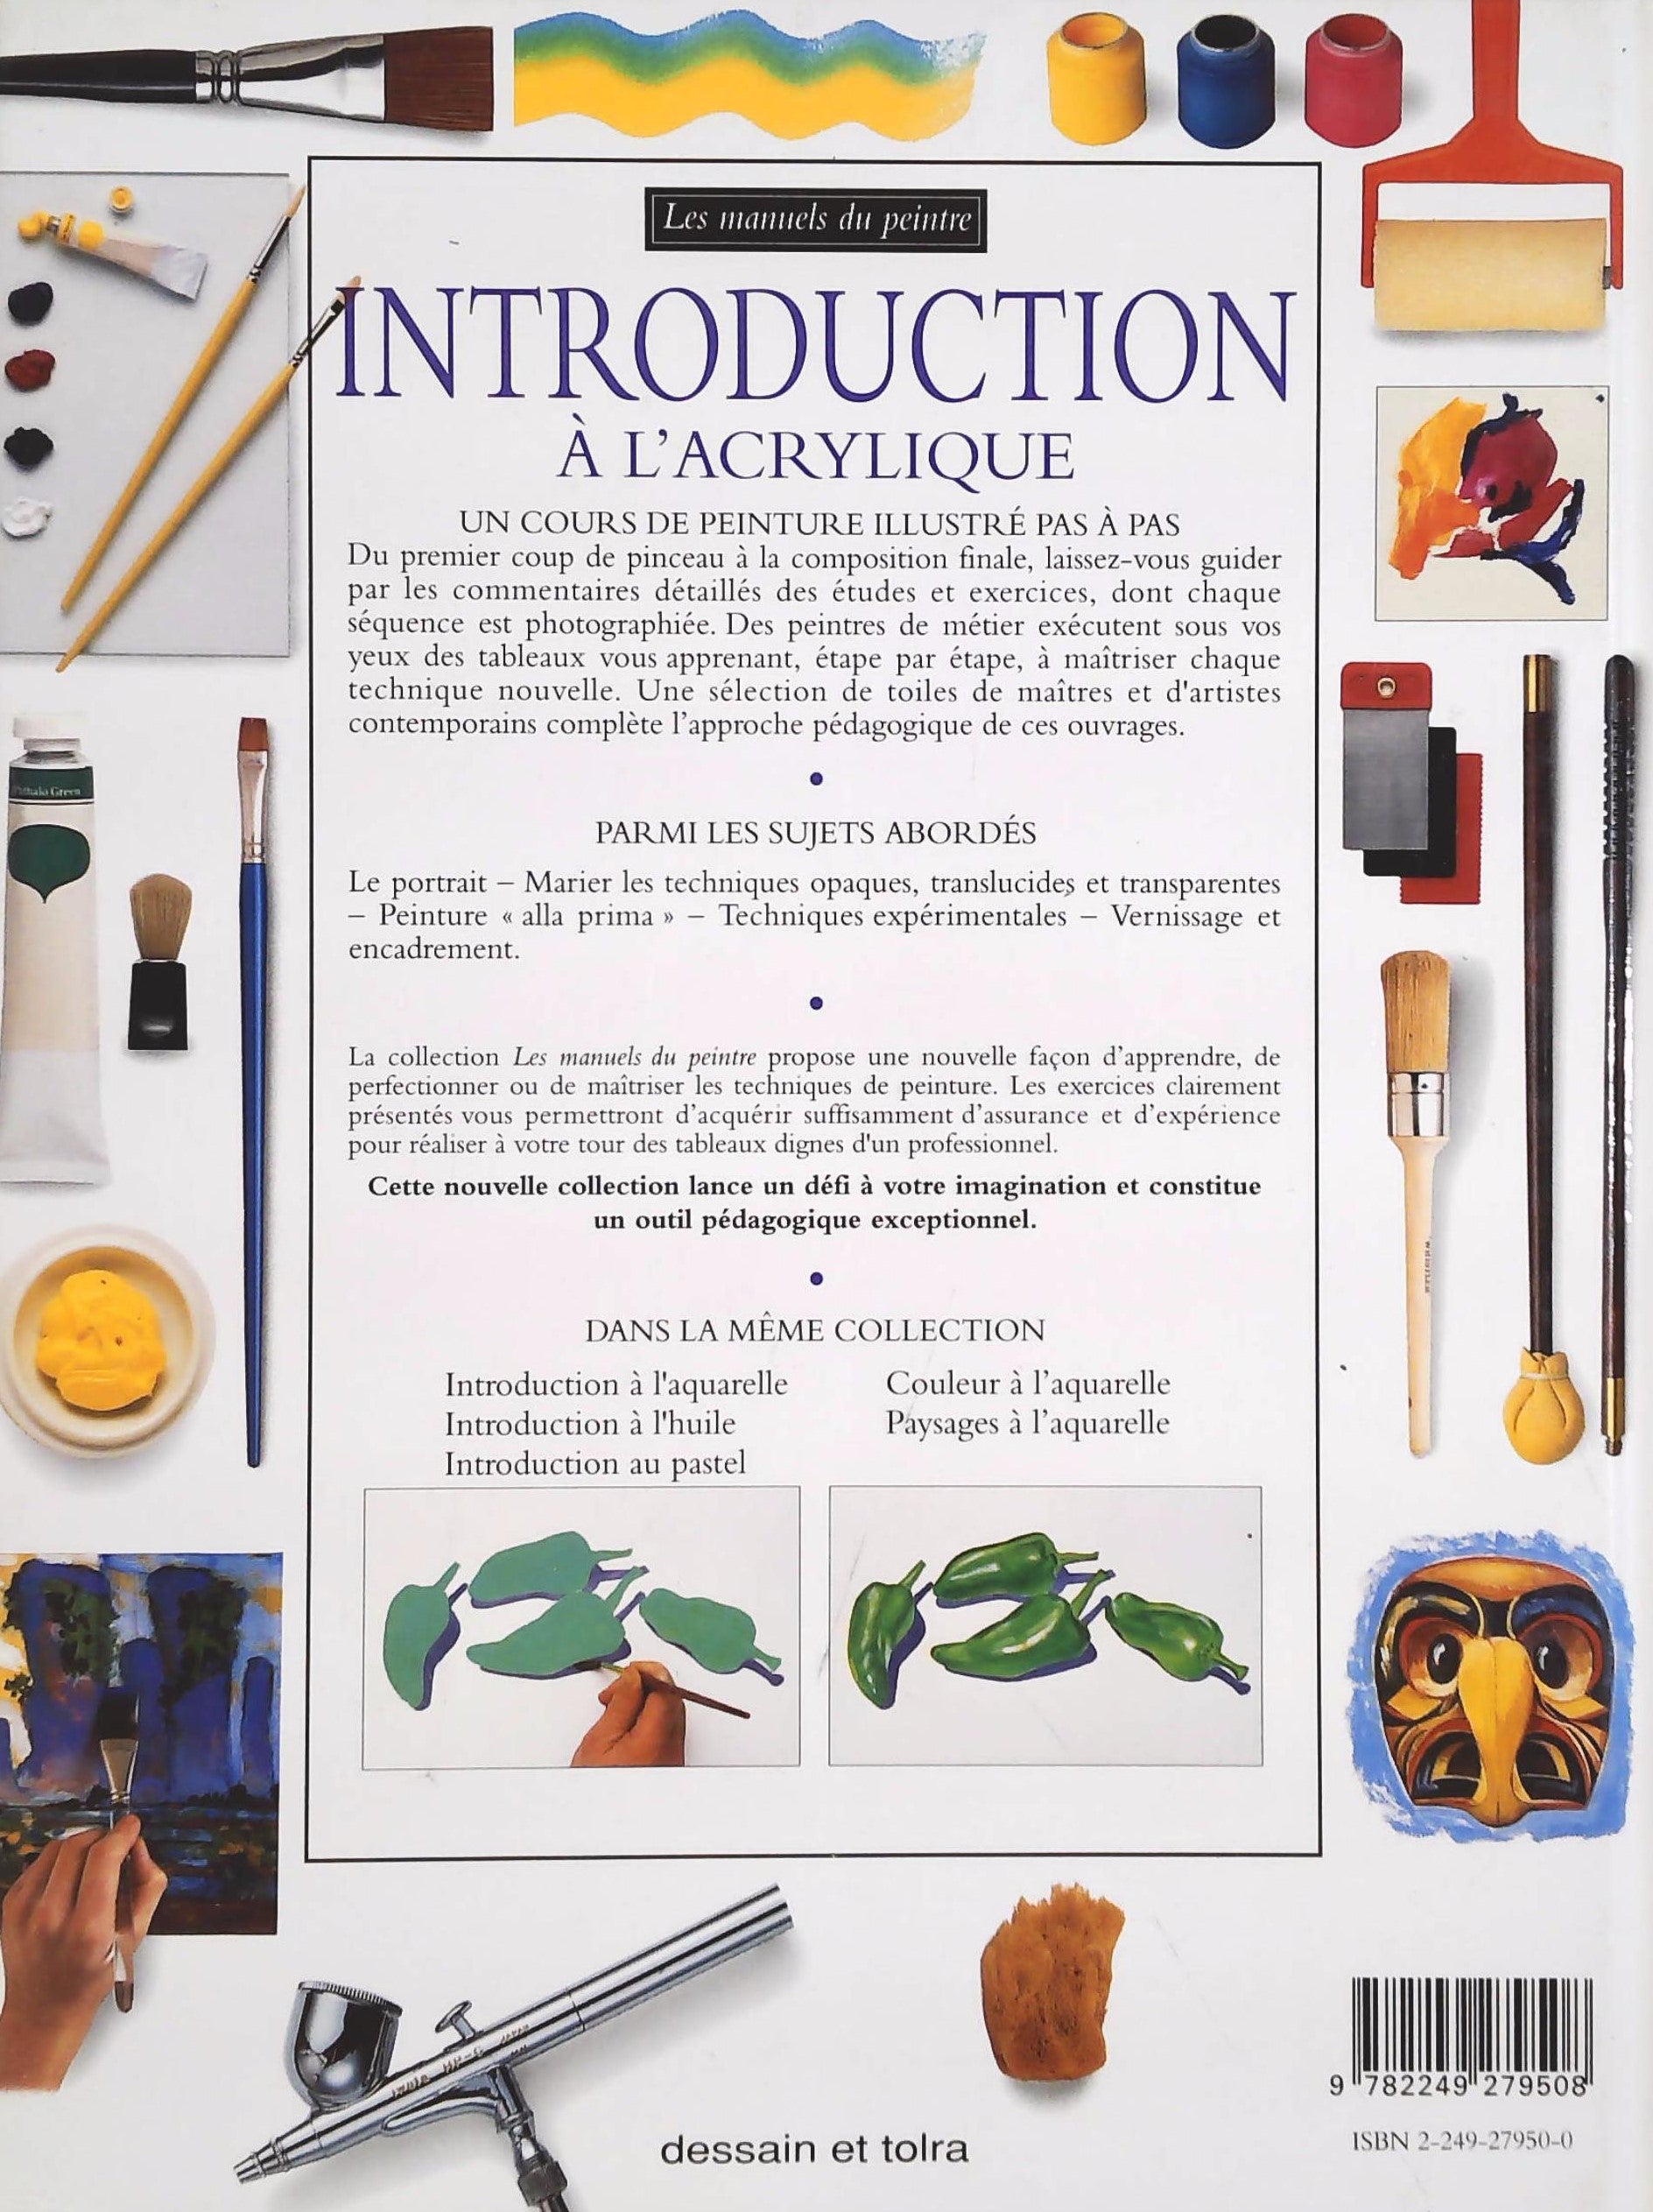 Les manuels du peintre : Introduction à l'acrylique (Ray Smith)